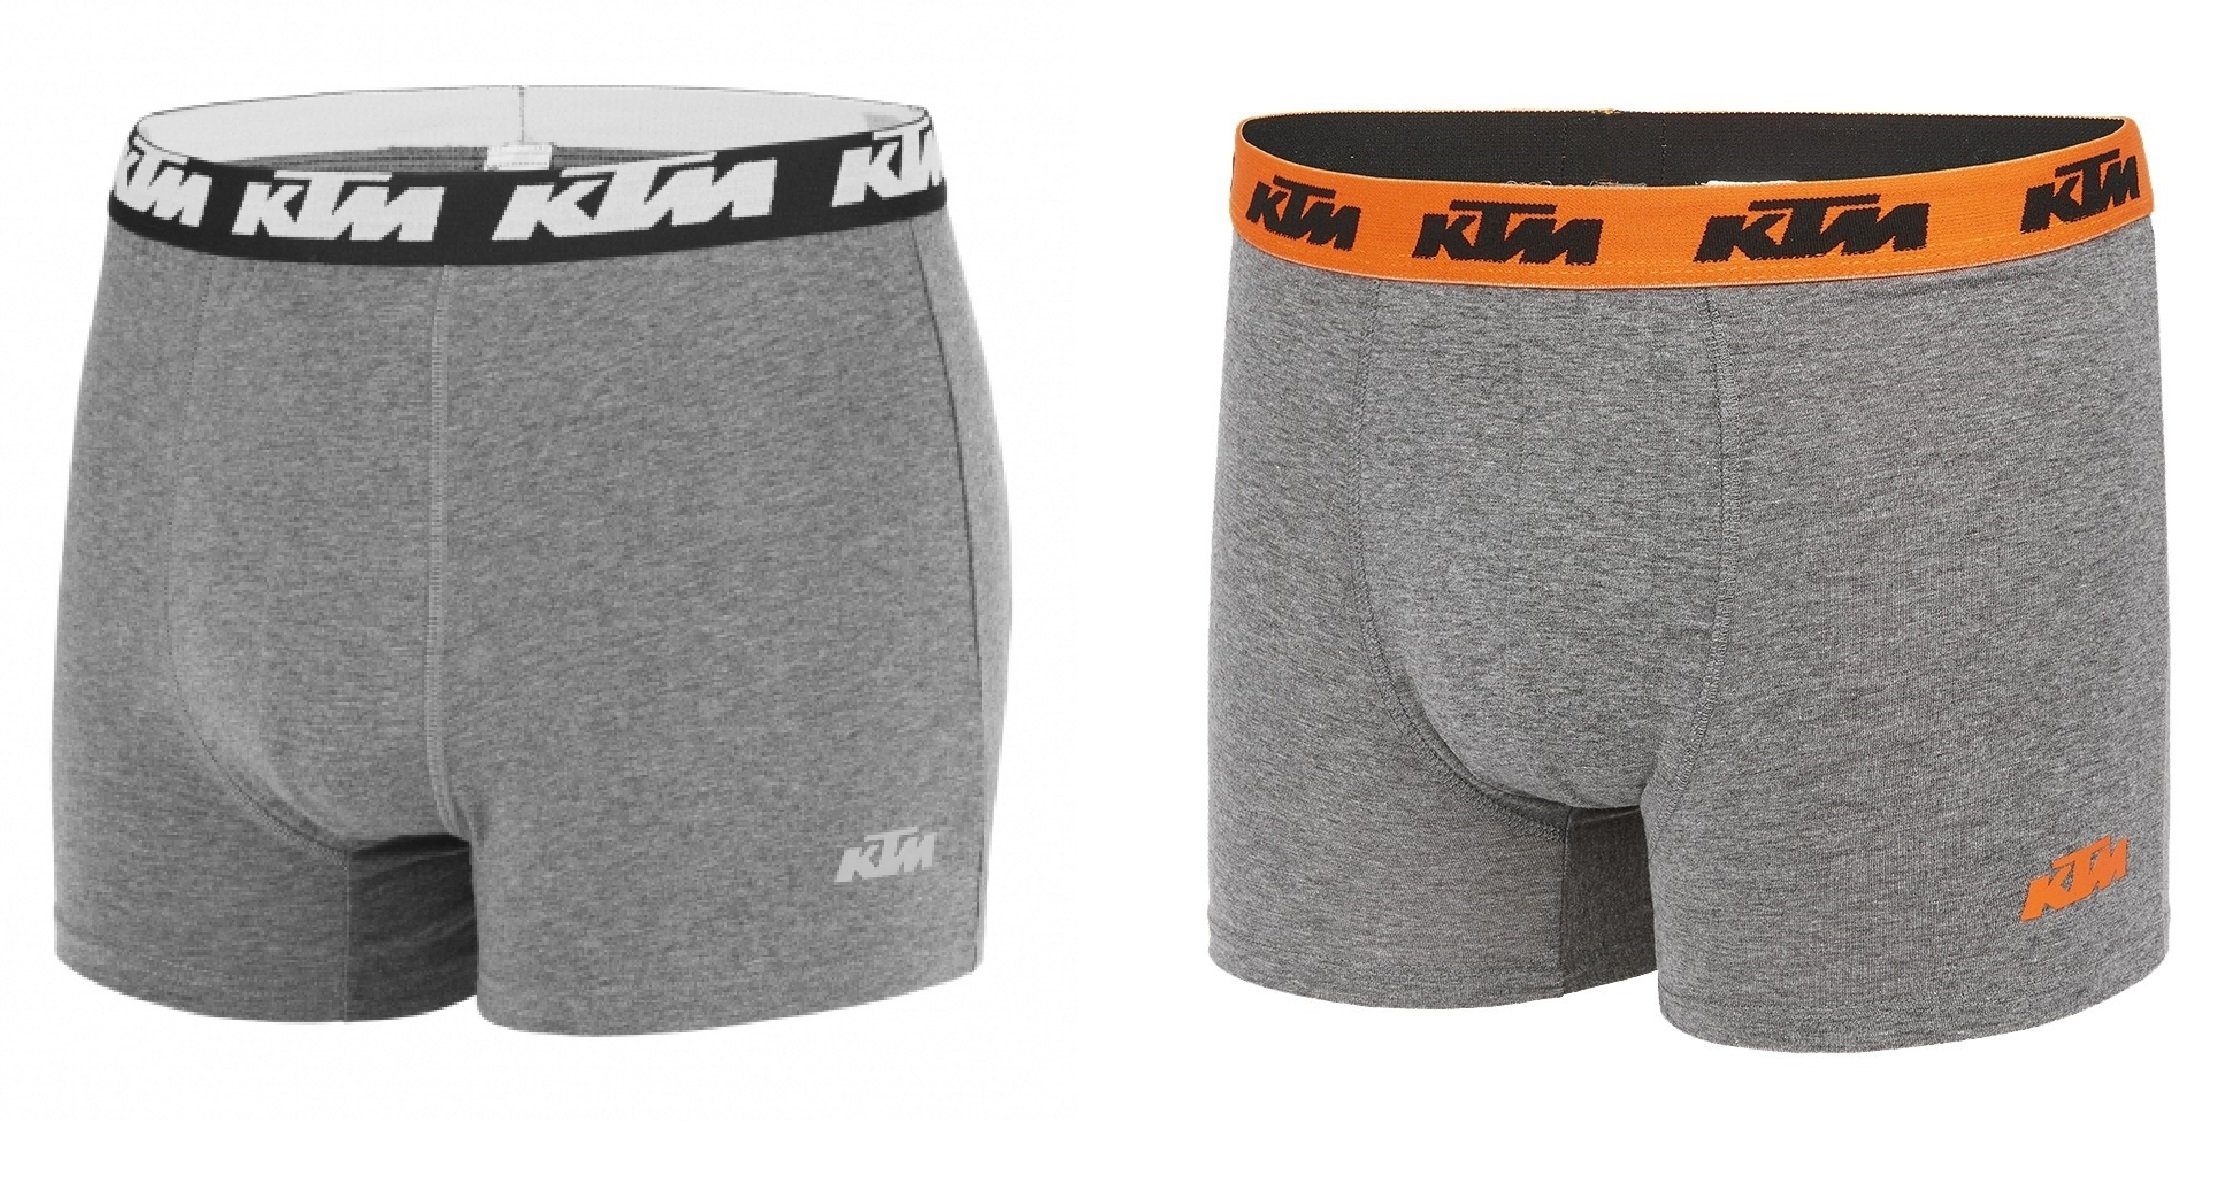 KTM Boxershorts Men Hüft-Shorts Basic Unterhose Outdoorsport (2er-Pack) mit Logo auf dem Taillenbund grau-orange